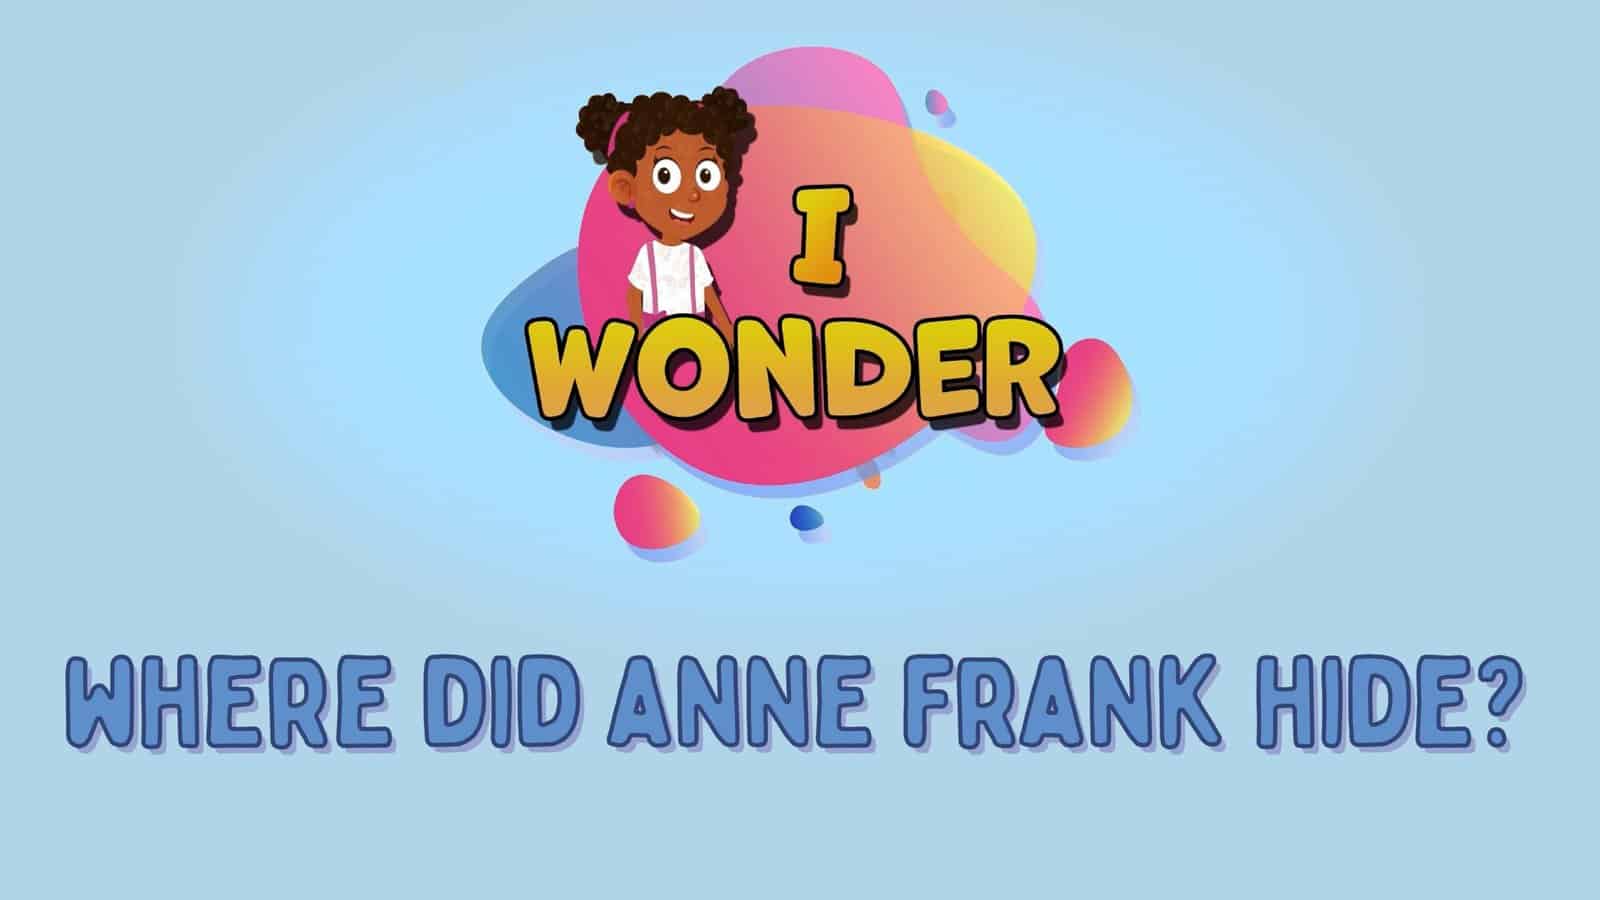 Where Did Anne Frank Hide?